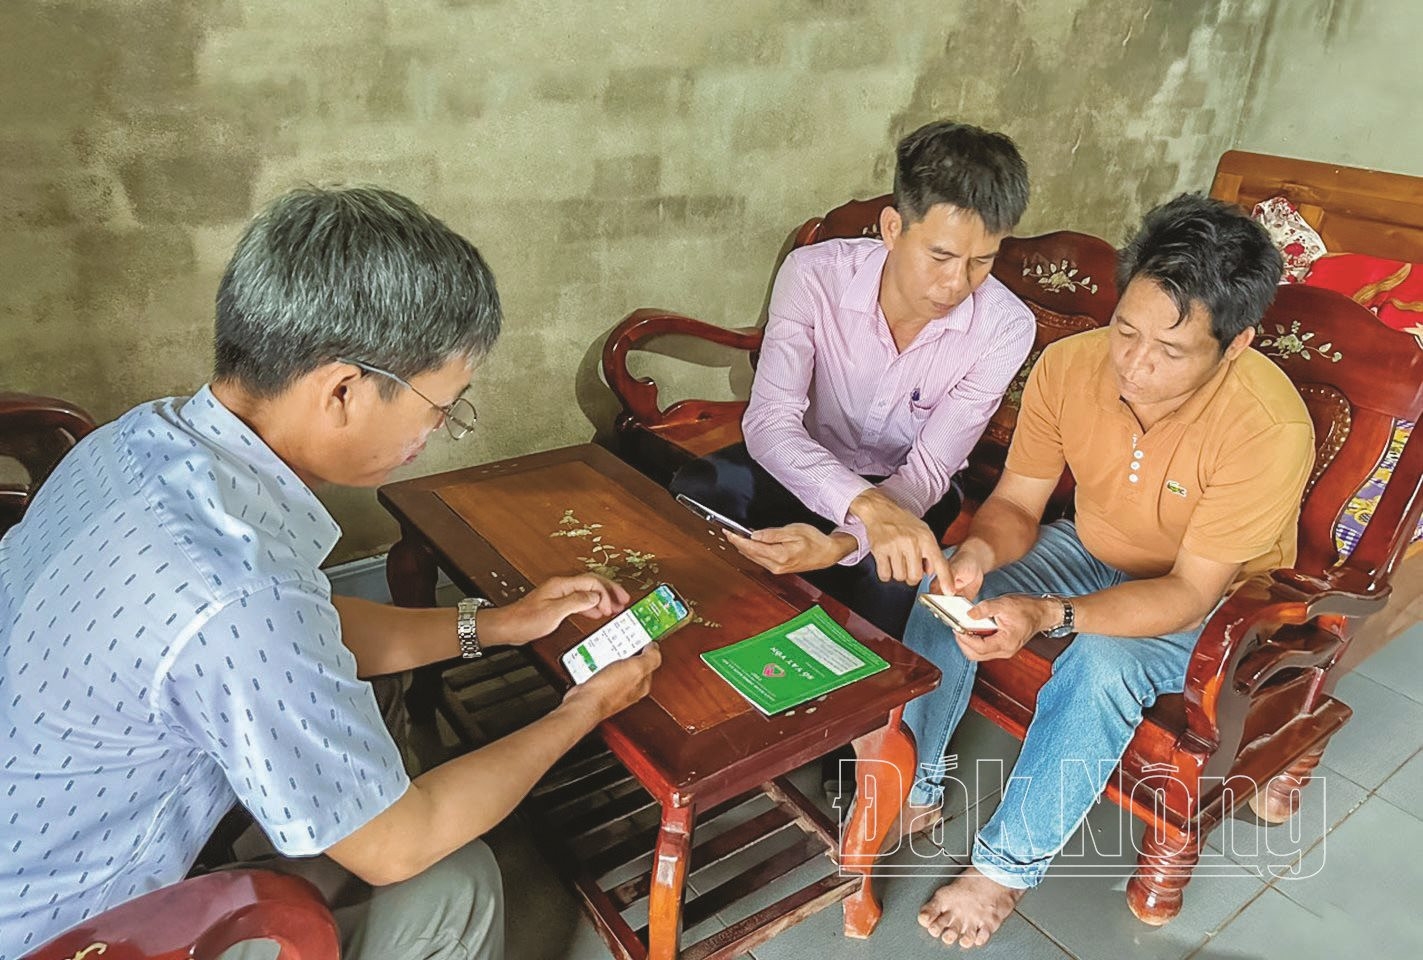 Người dân thôn 15, xã Đắk Wer, huyện Đắk R’lấp được hỗ trợ cài đặt ứng dụng giáo dục tài chính, nhằm giúp người nghèo và các đối tượng chính sách tiếp cận thông tin về tài chính, chính sách vay vốn và các sản phẩm dịch vụ của Chi nhánh Ngân hàng Chính sách xã hội Đắk Nông thông qua ứng dụng trên điện thoại